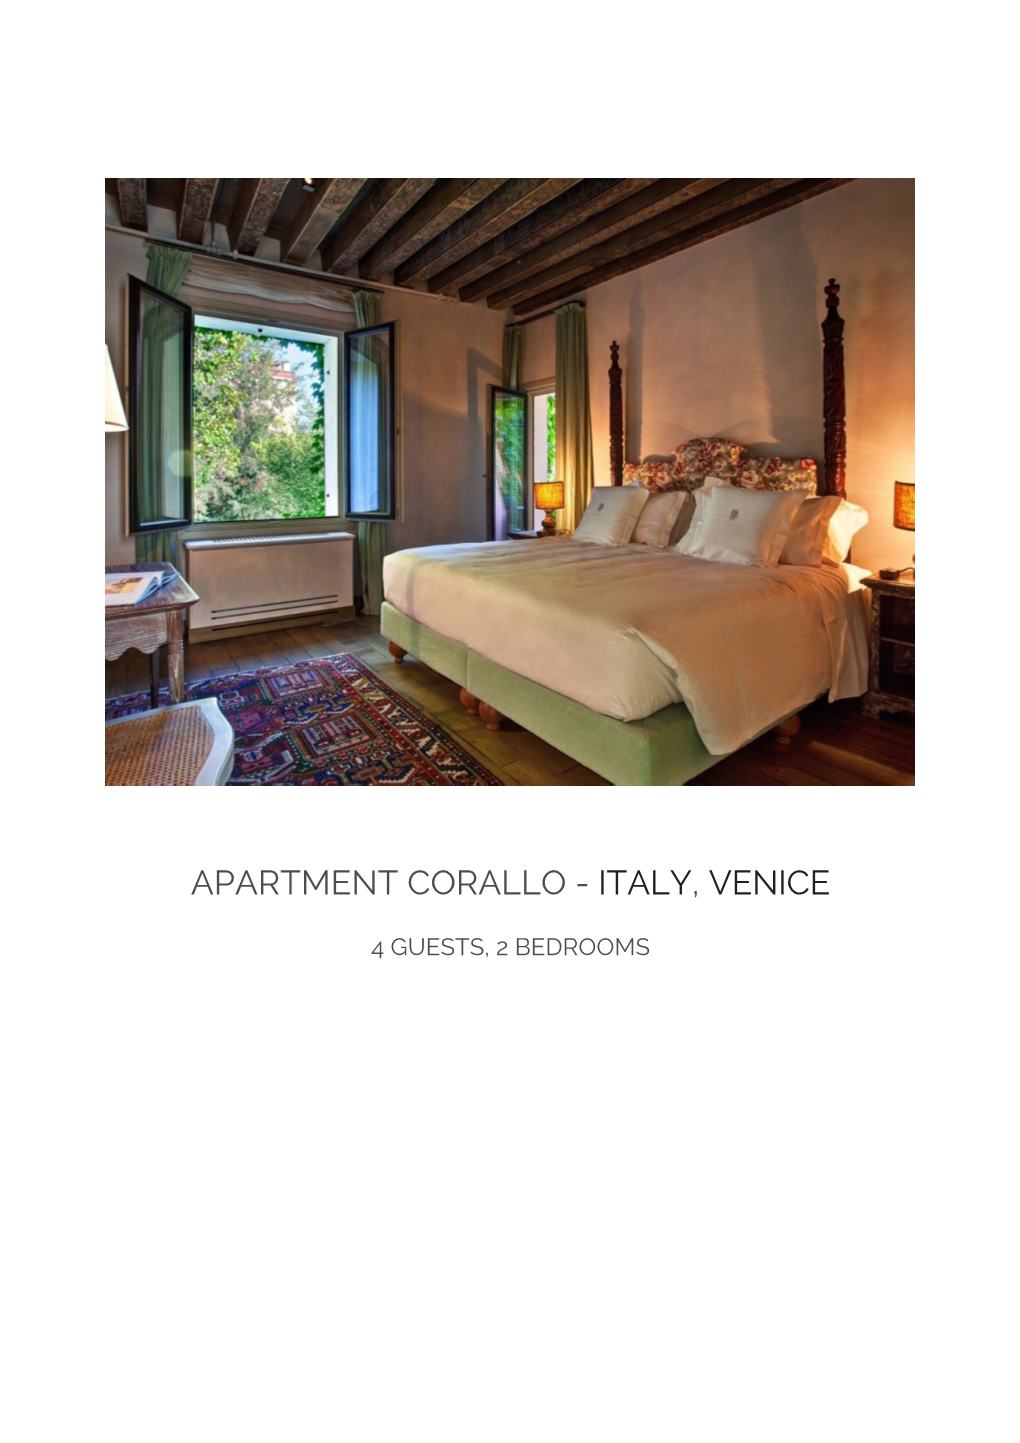 Apartment Corallo - Italy, Venice